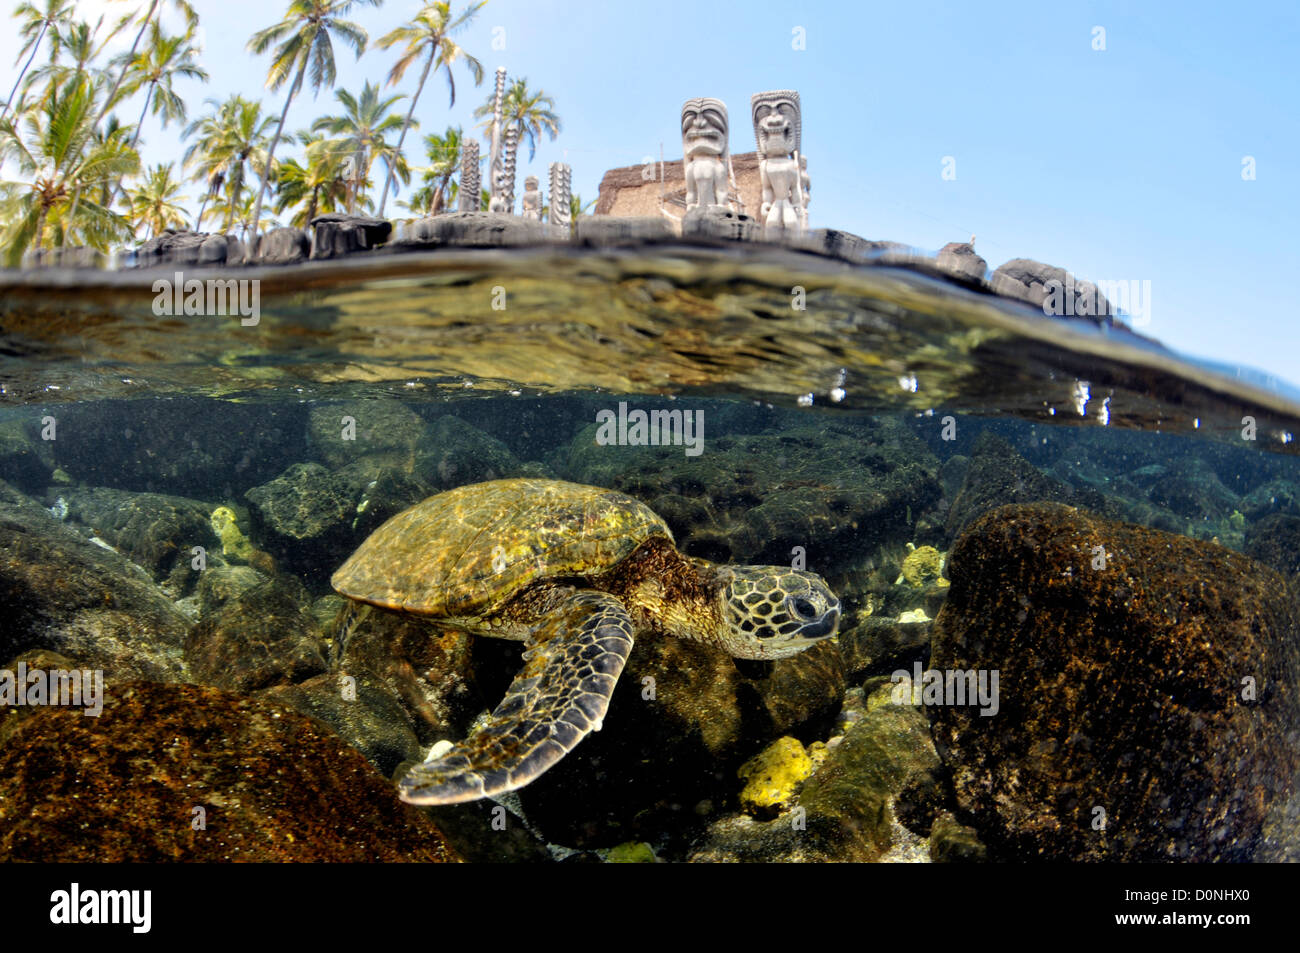 Imagen de división tradicional Hawaiana totens y tortugas marinas verdes, Chelonia mydas, Honaunau Bay, Hawai, Estados Unidos, Pacífico Norte Foto de stock